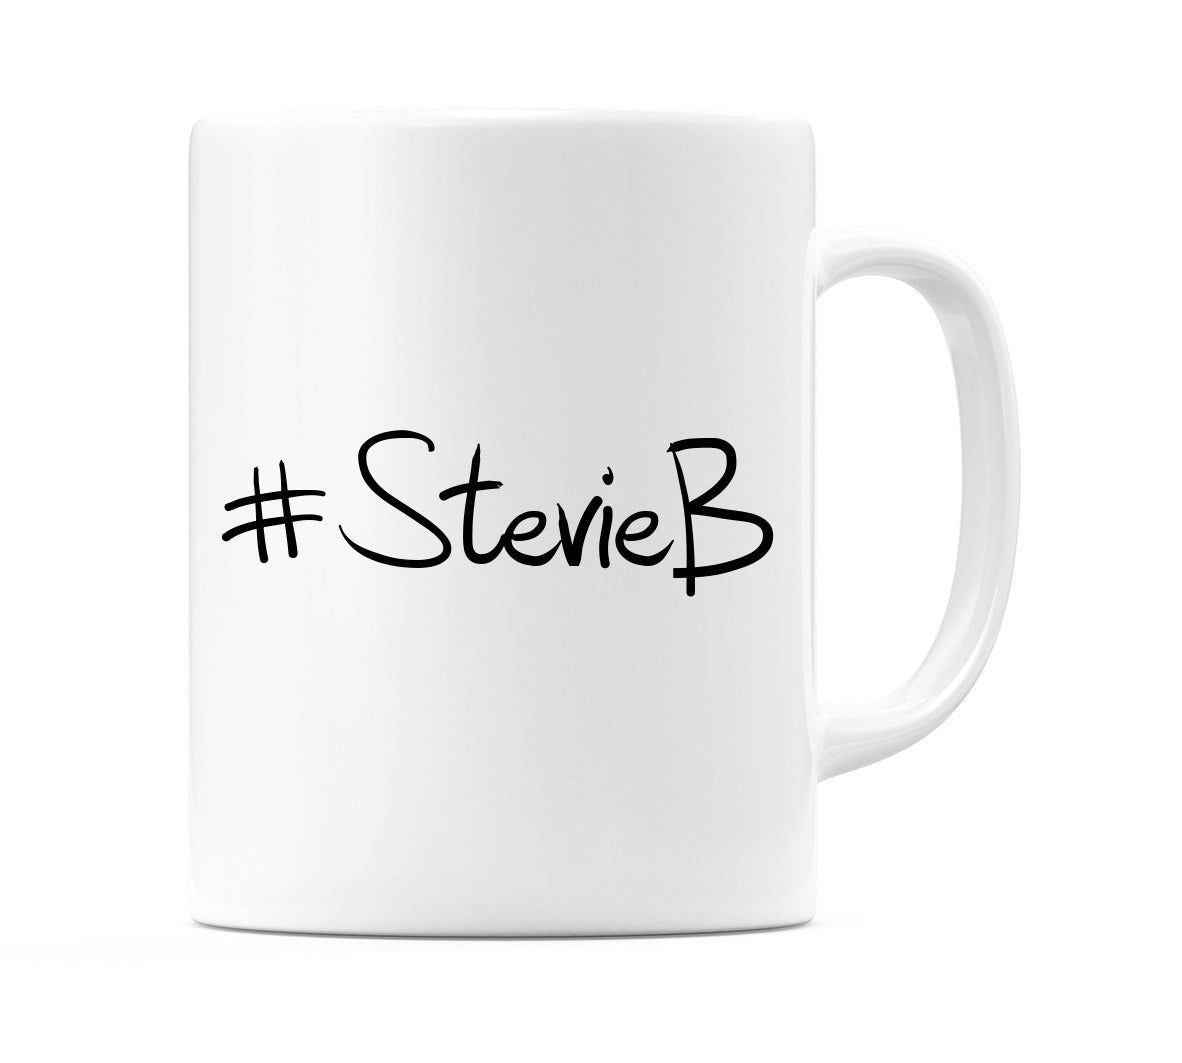 #StevieB Mug